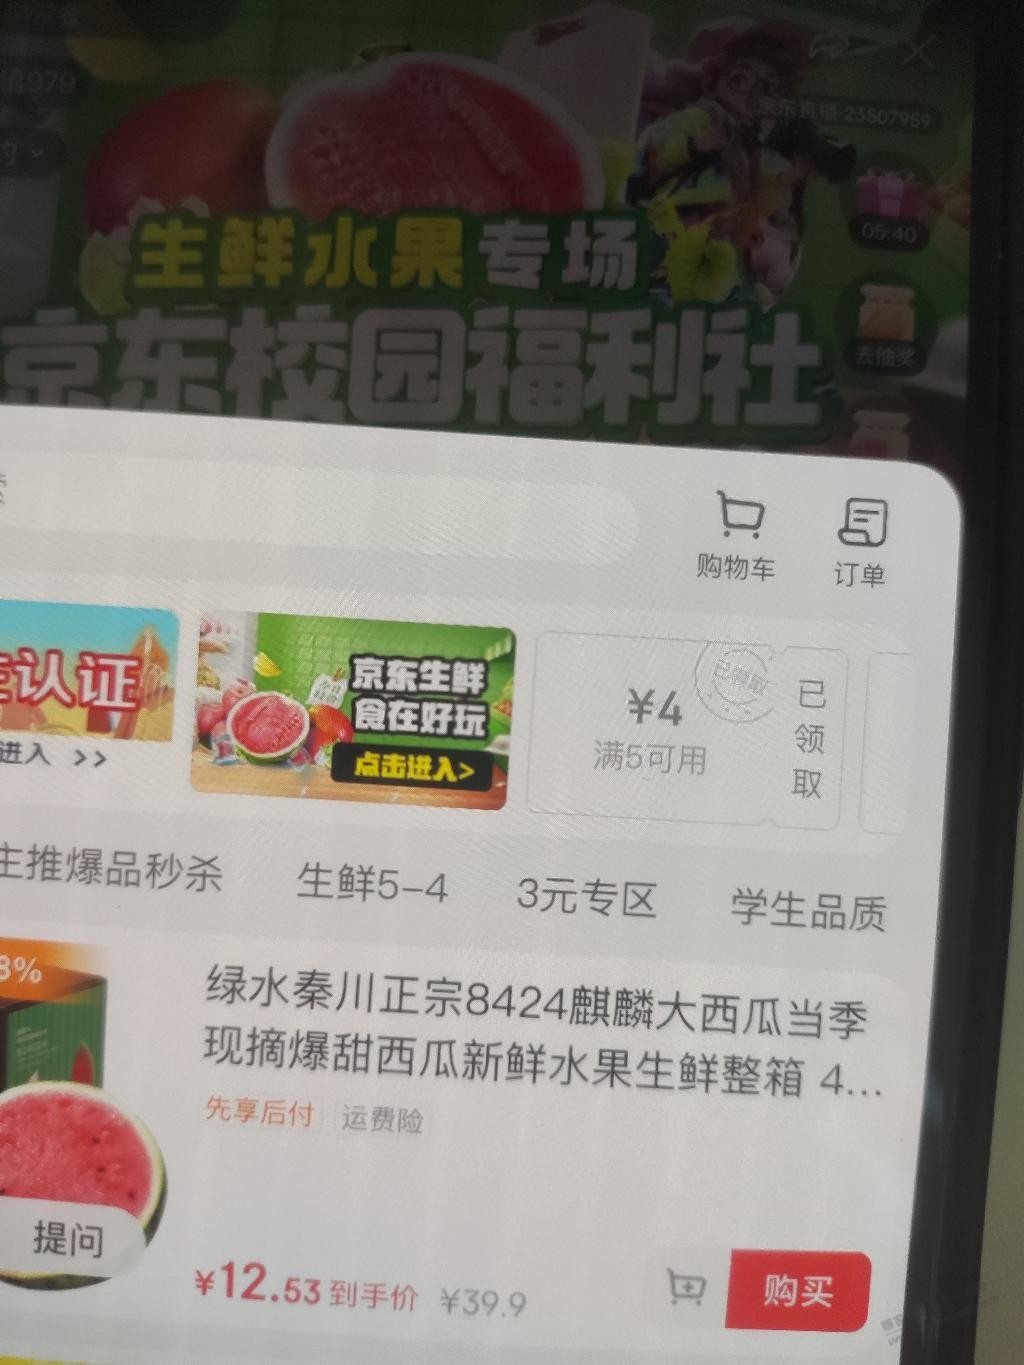 京东校园直播间学生用户9.9买4斤西瓜